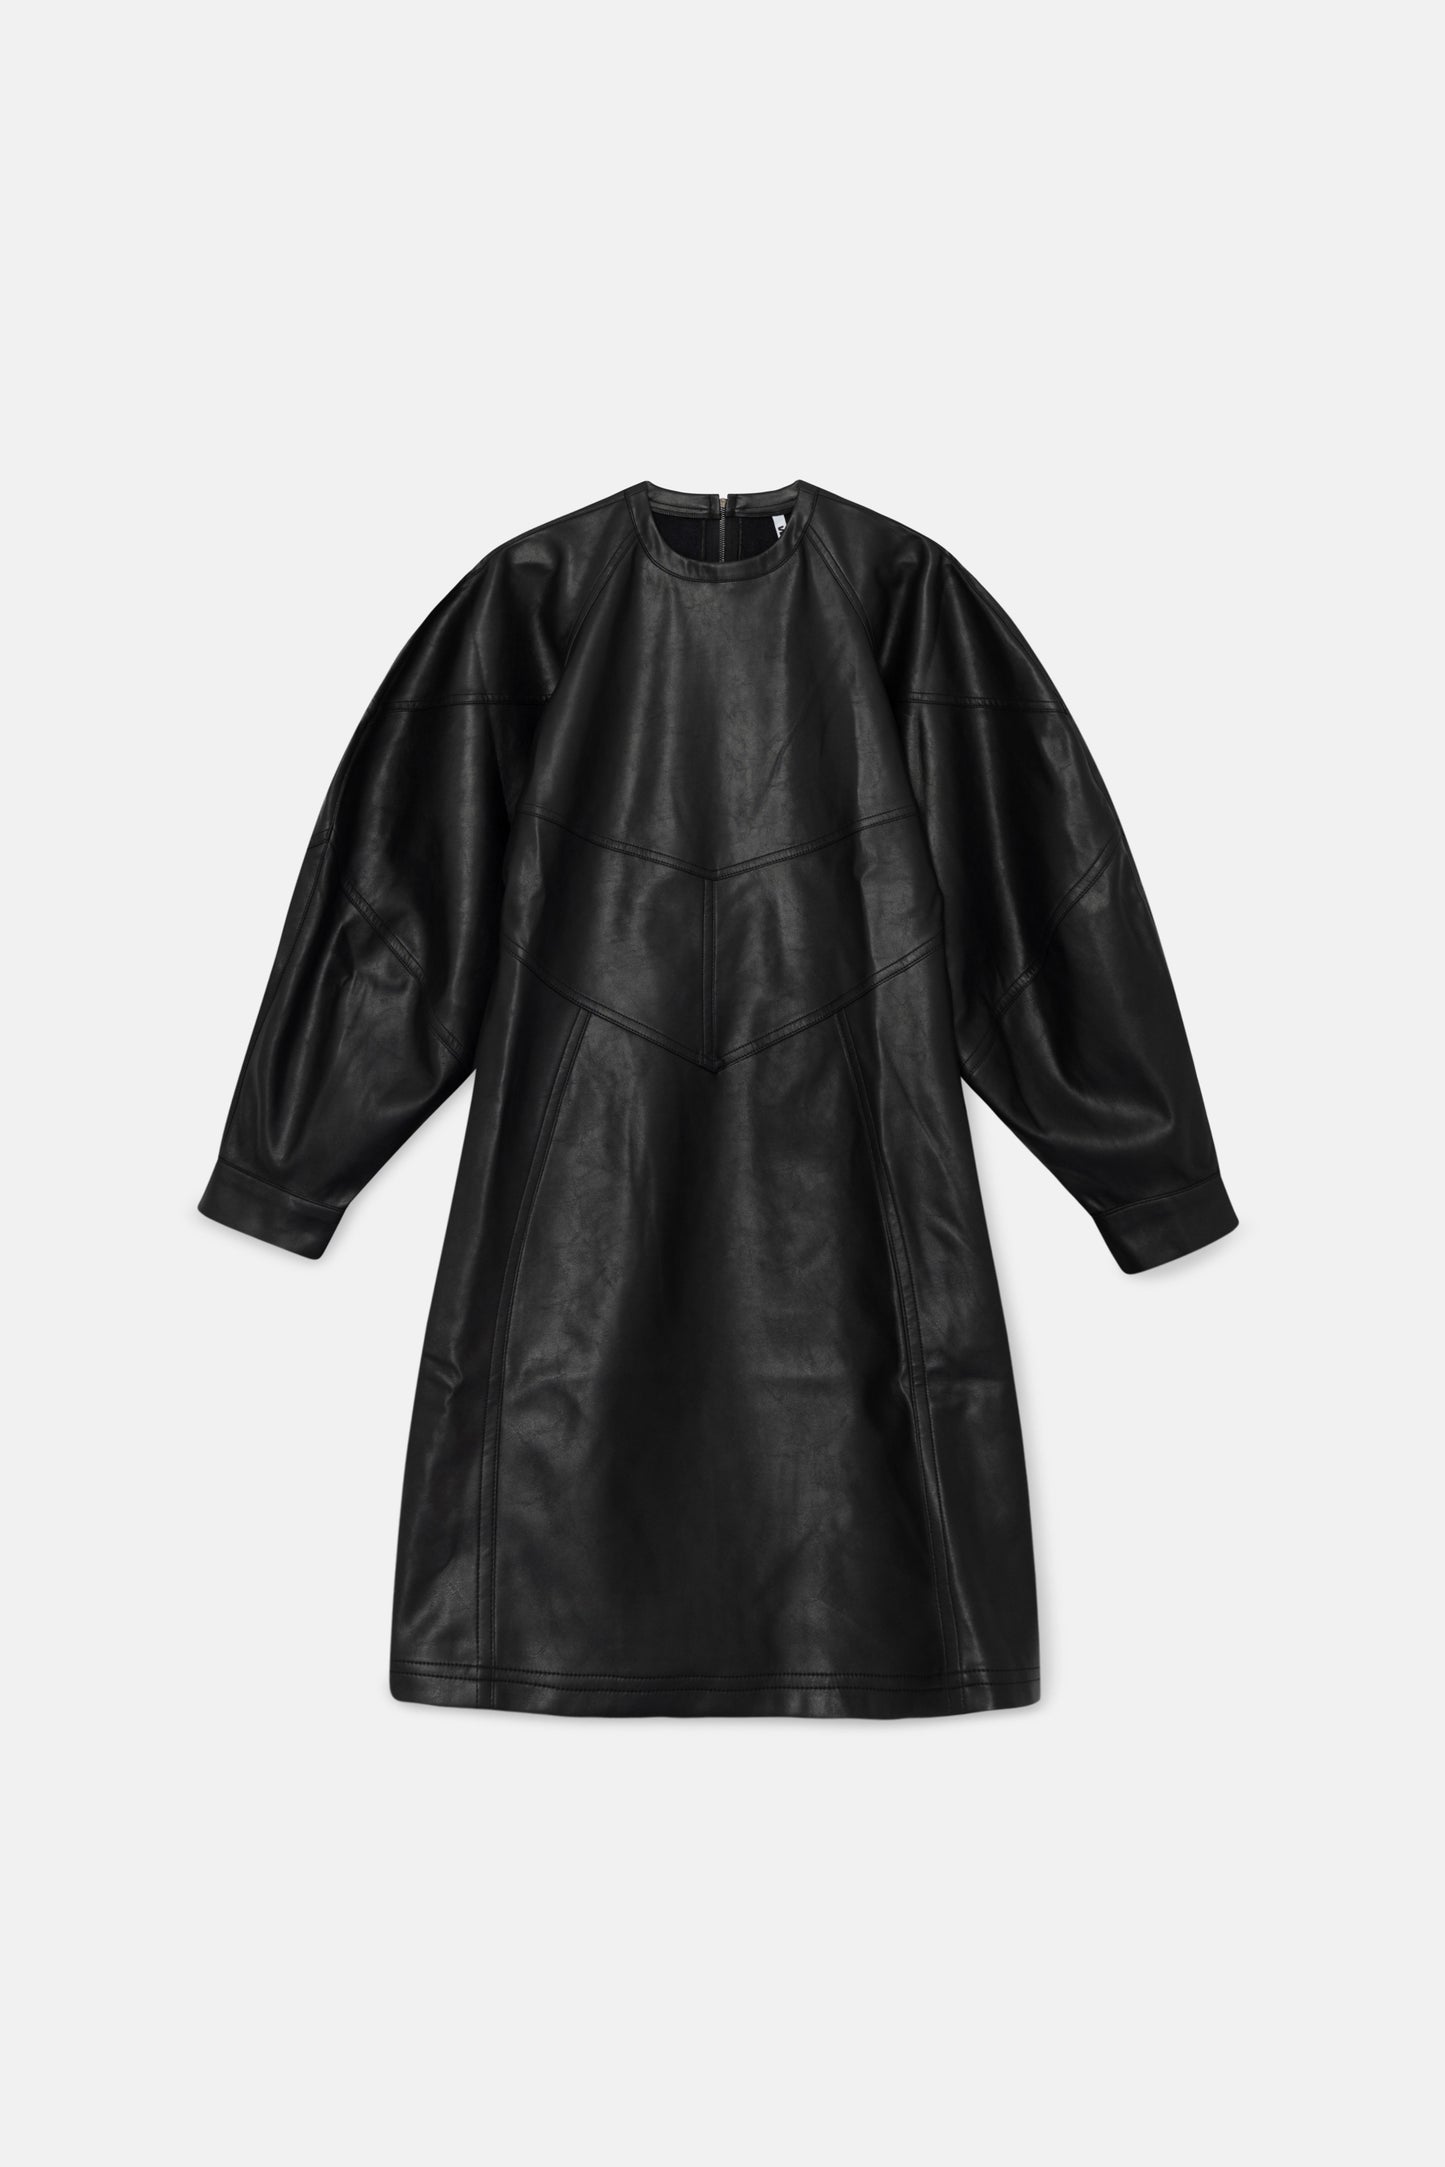 Short black faux leather dress